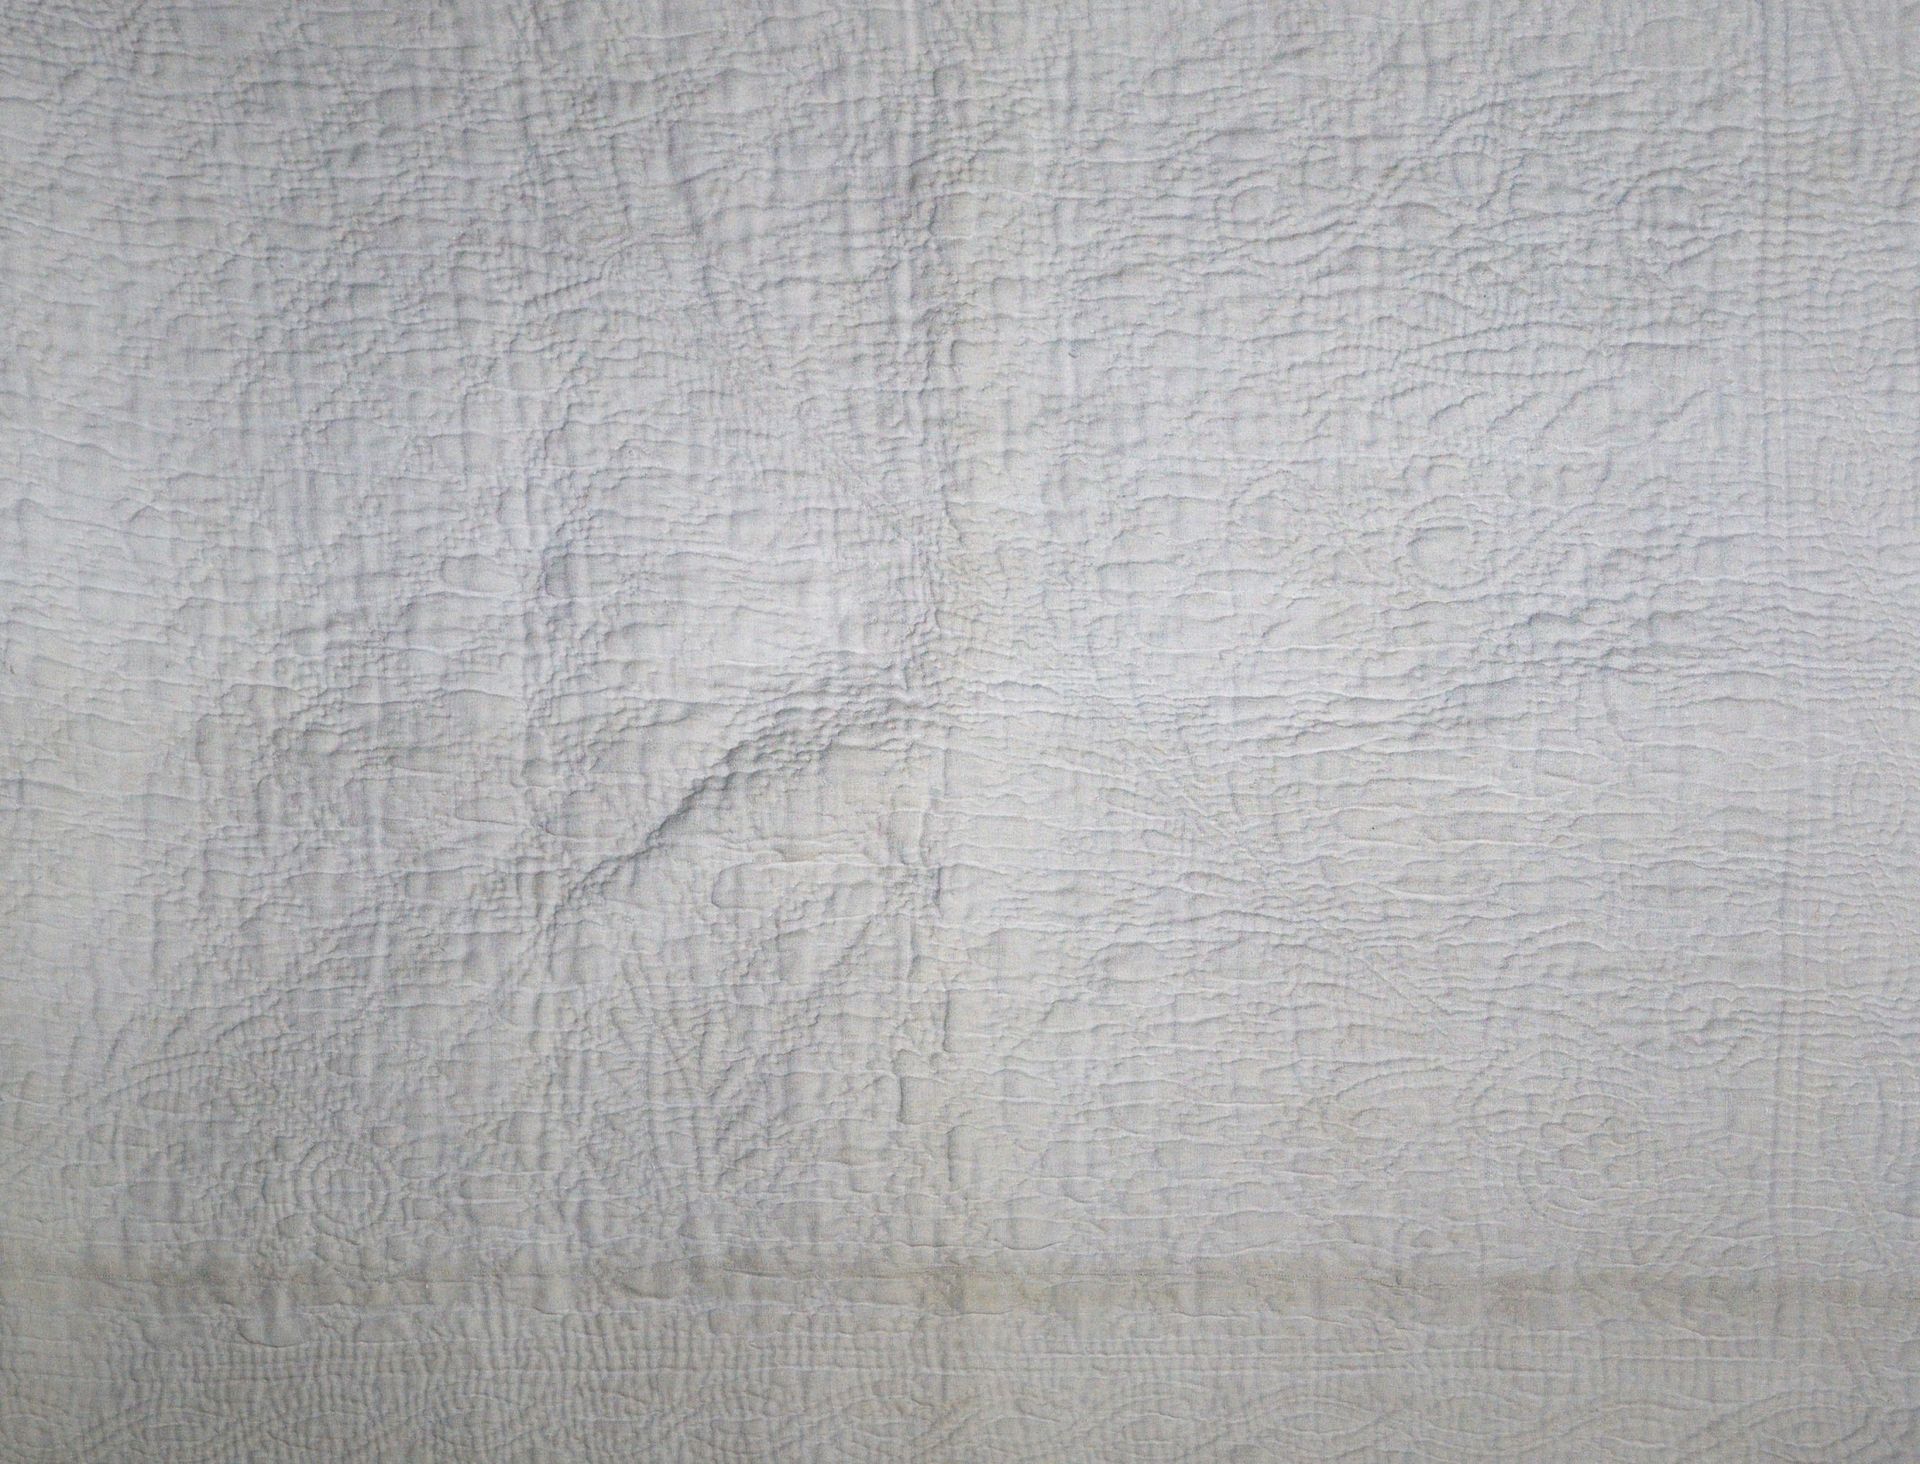 Null PROVENCE, CIRCA 1820

Couverture piquée, matelassée



Coton blanc, médaill&hellip;